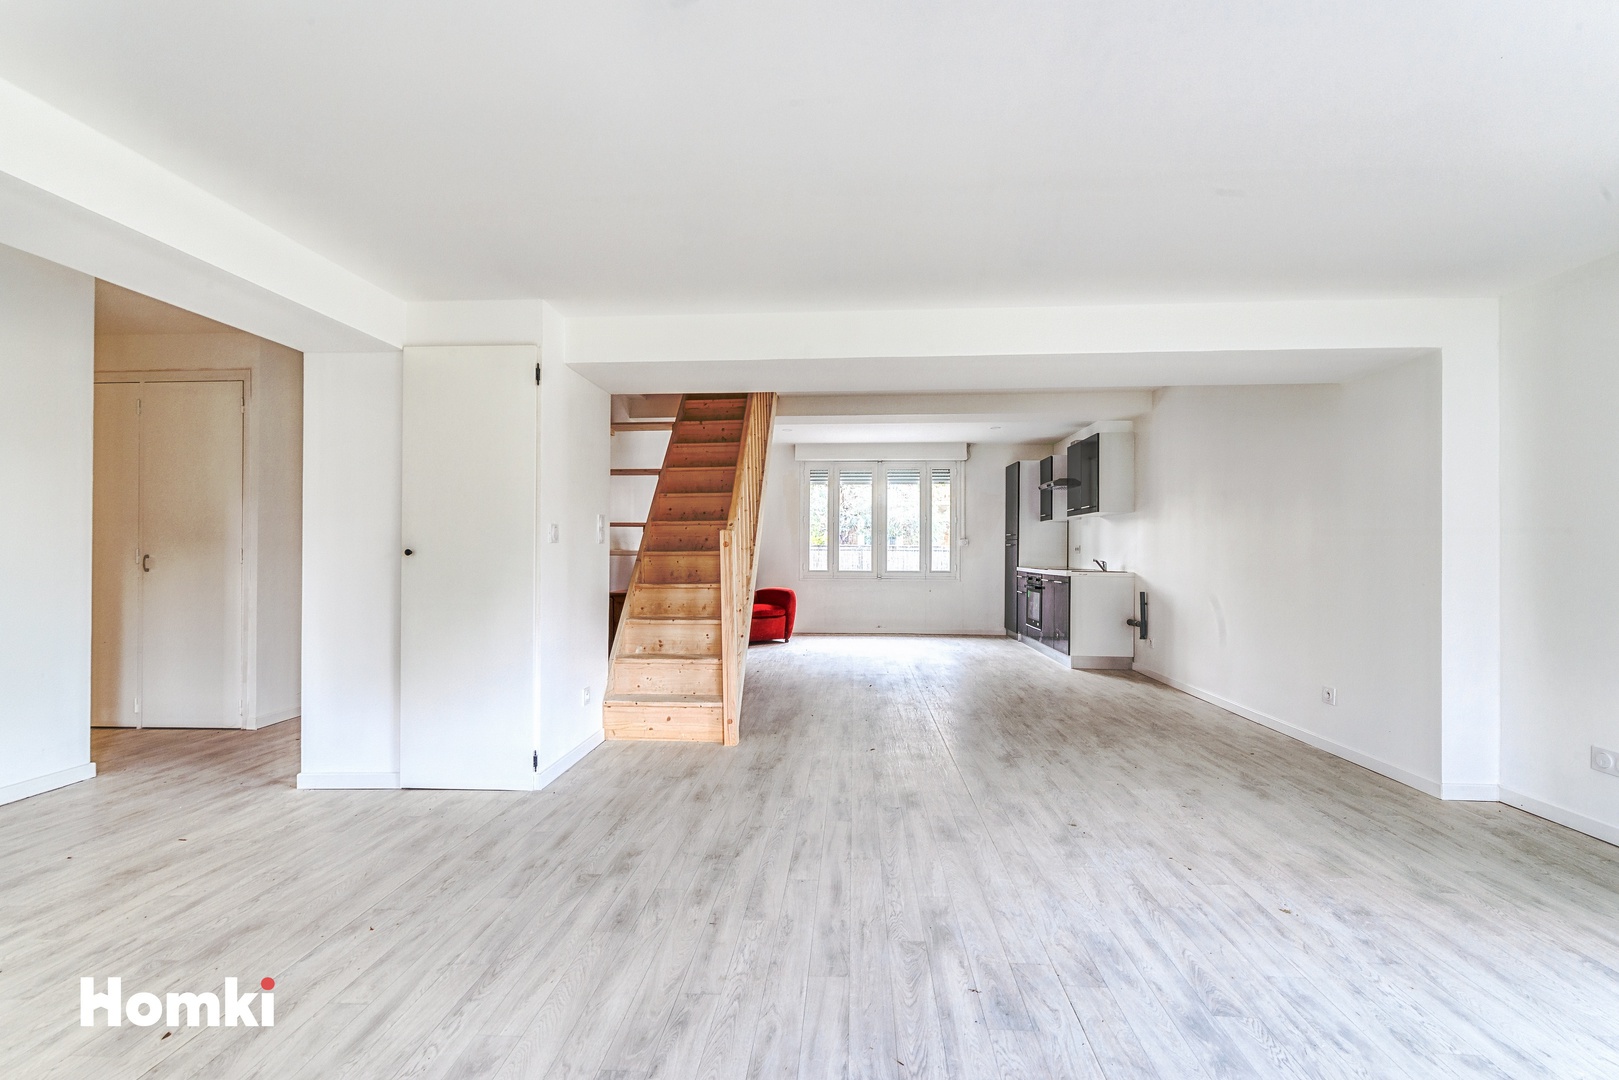 Homki - Vente Maison/villa  de 95.0 m² à Saint-Orens-de-Gameville 31650